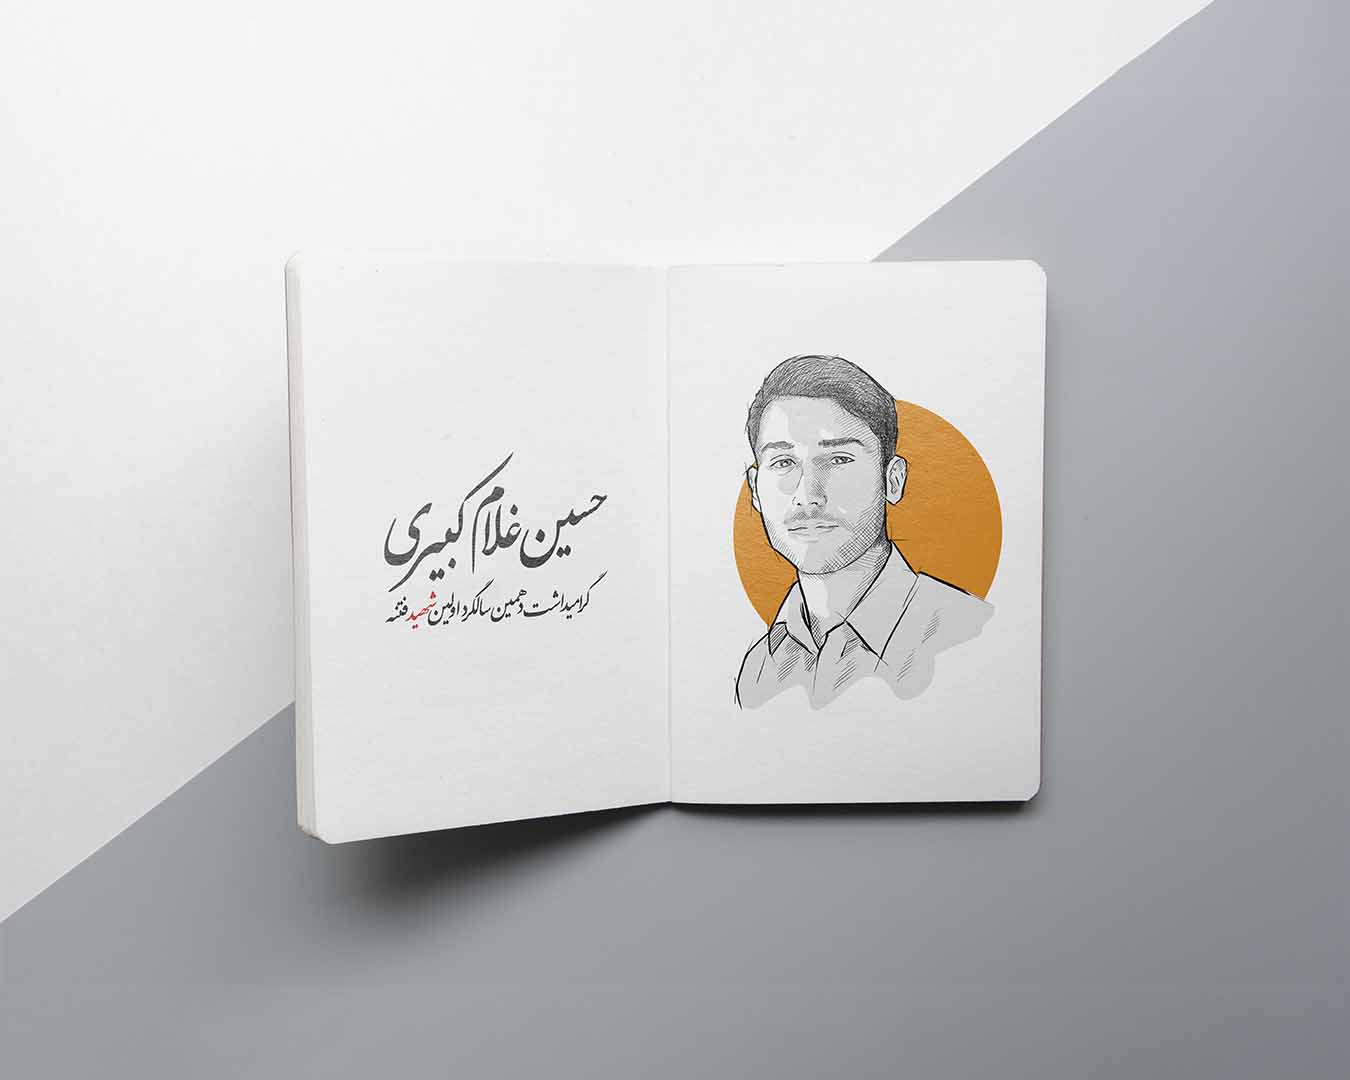 طراحی و تصویرسازی چهره شهید حسین غلام کبیری